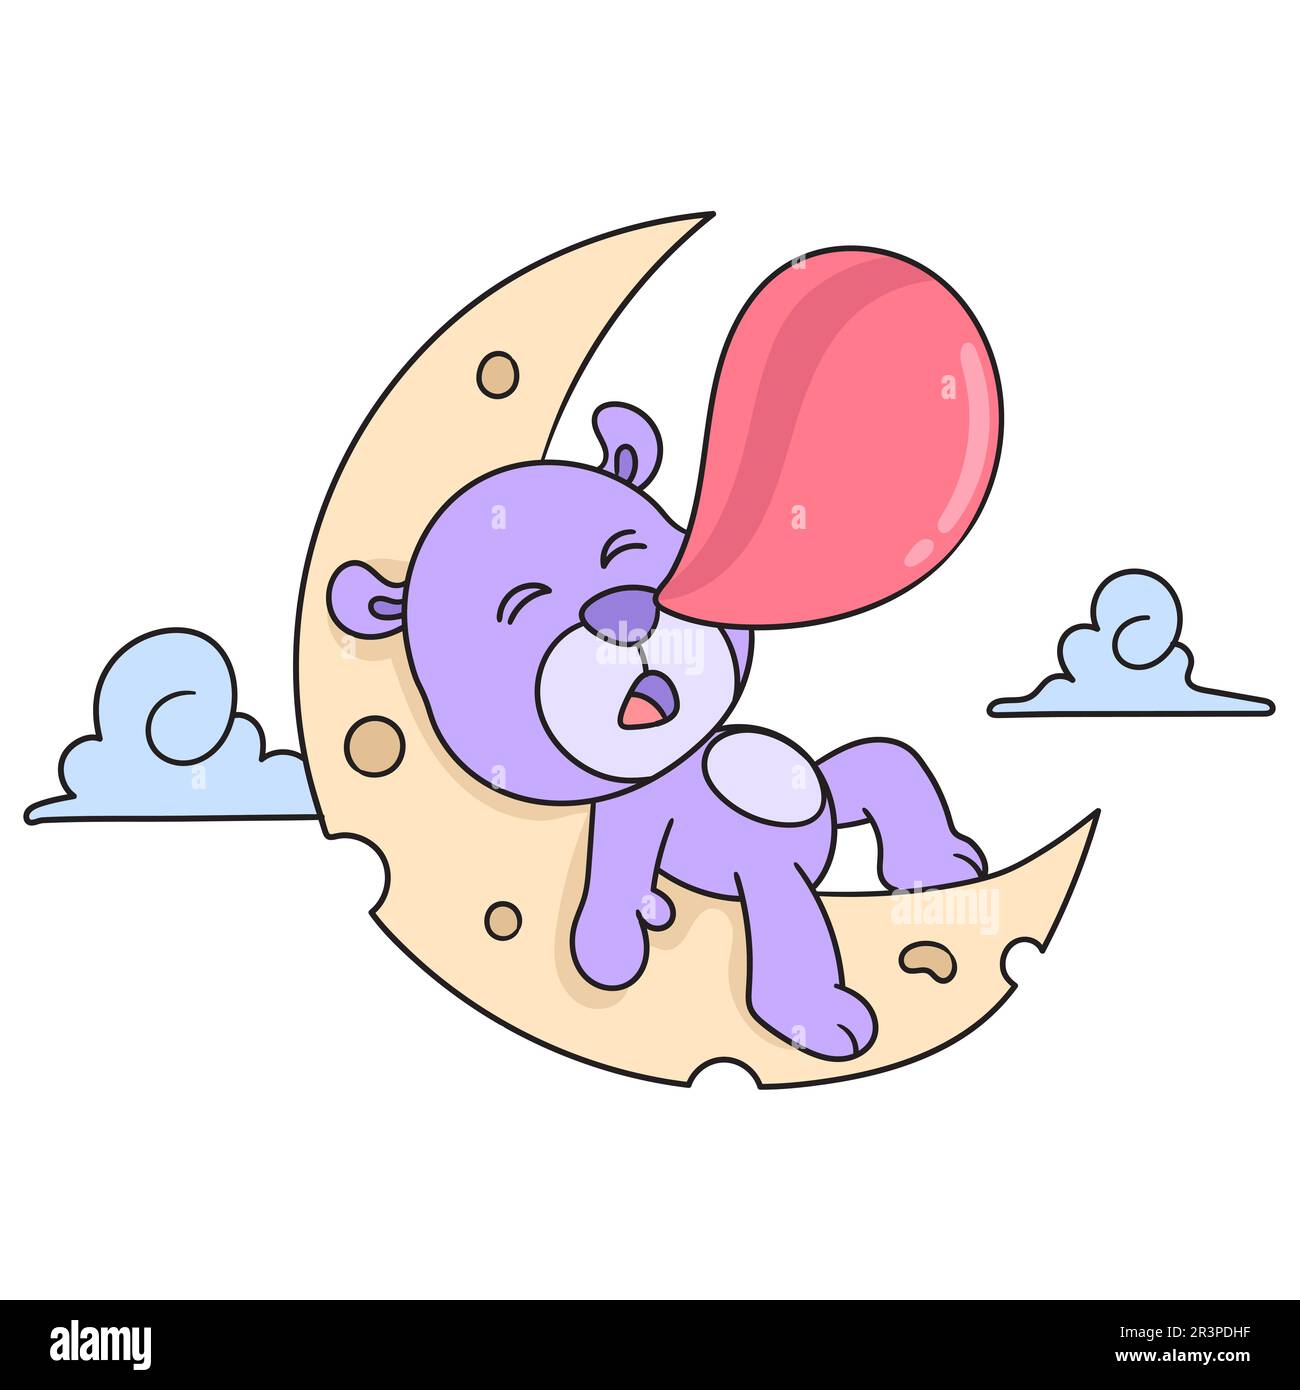 L'ours dort la nuit sur la lune, dandle kawaii. icône doodle Banque D'Images